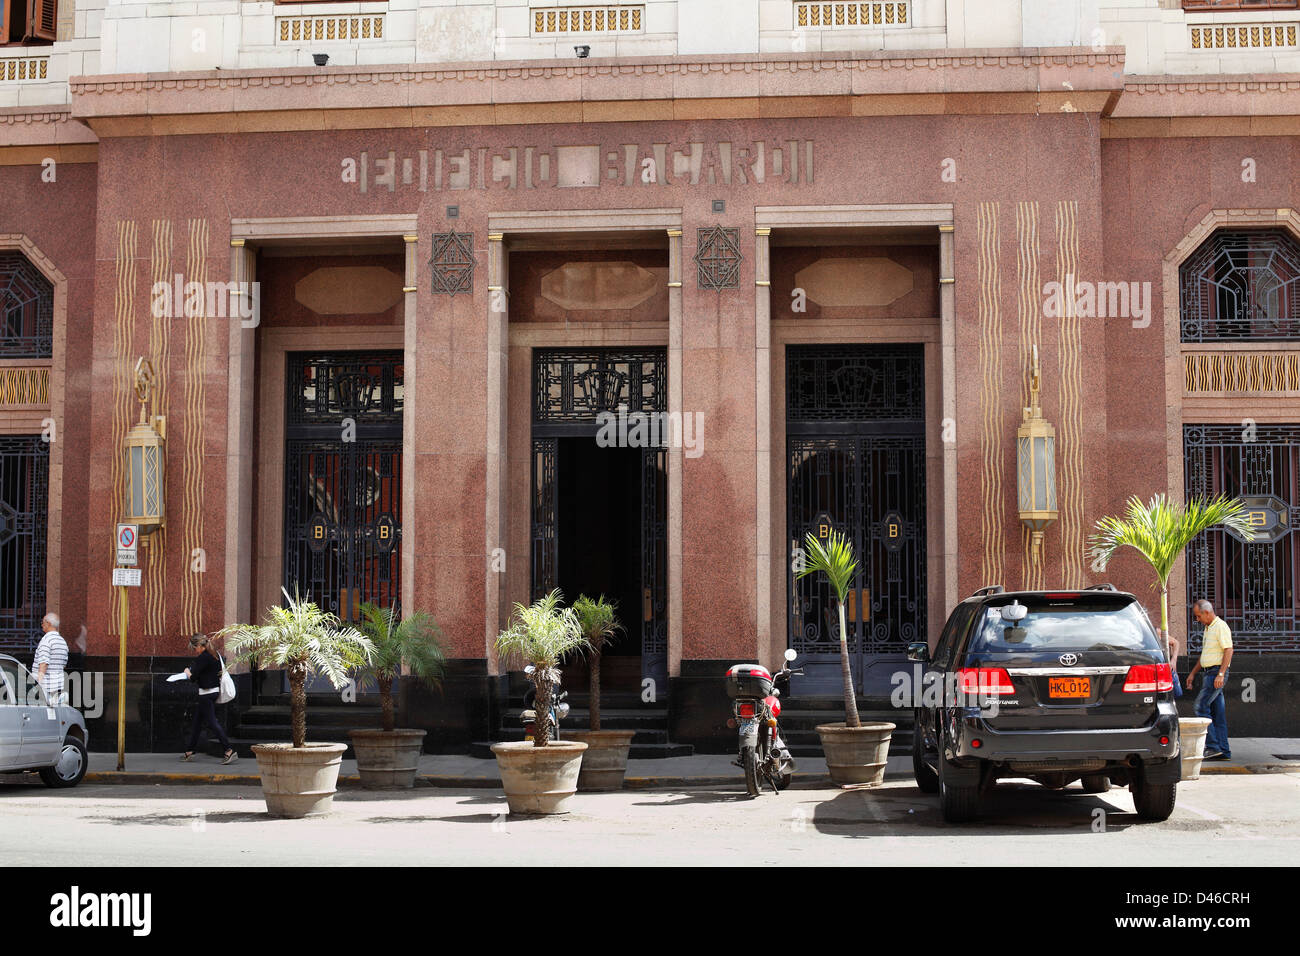 El viejo edificio de Ron Bacardi Art Deco en La Habana, Cuba, ahora se utilizan como oficinas de gobierno Foto de stock